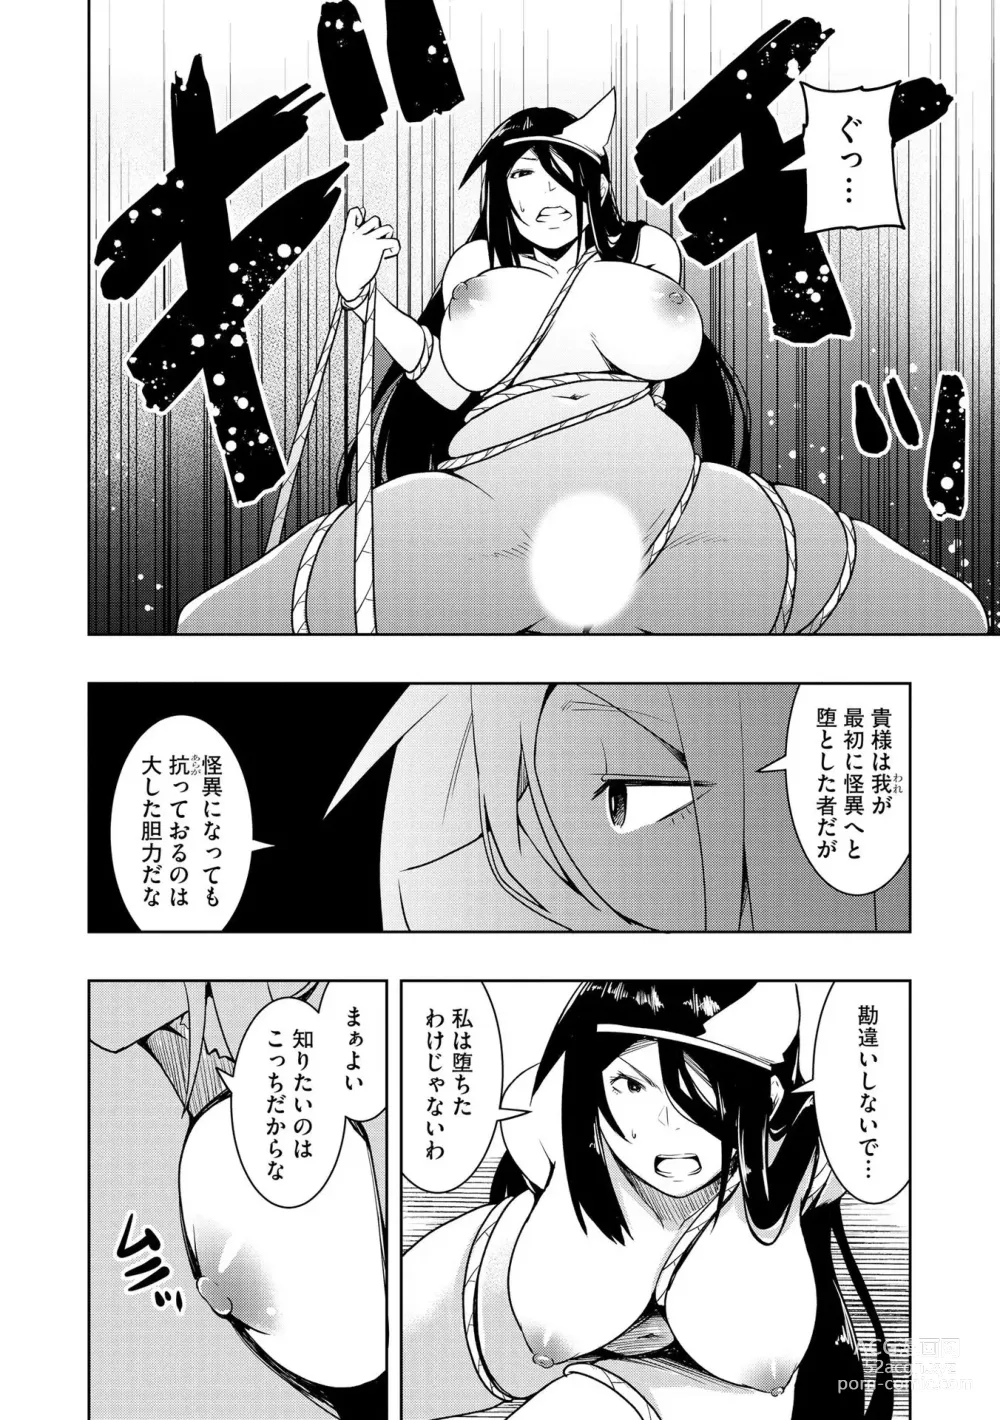 Page 175 of manga Kai-In Hontou wa Yarashii Toshi Densetsu